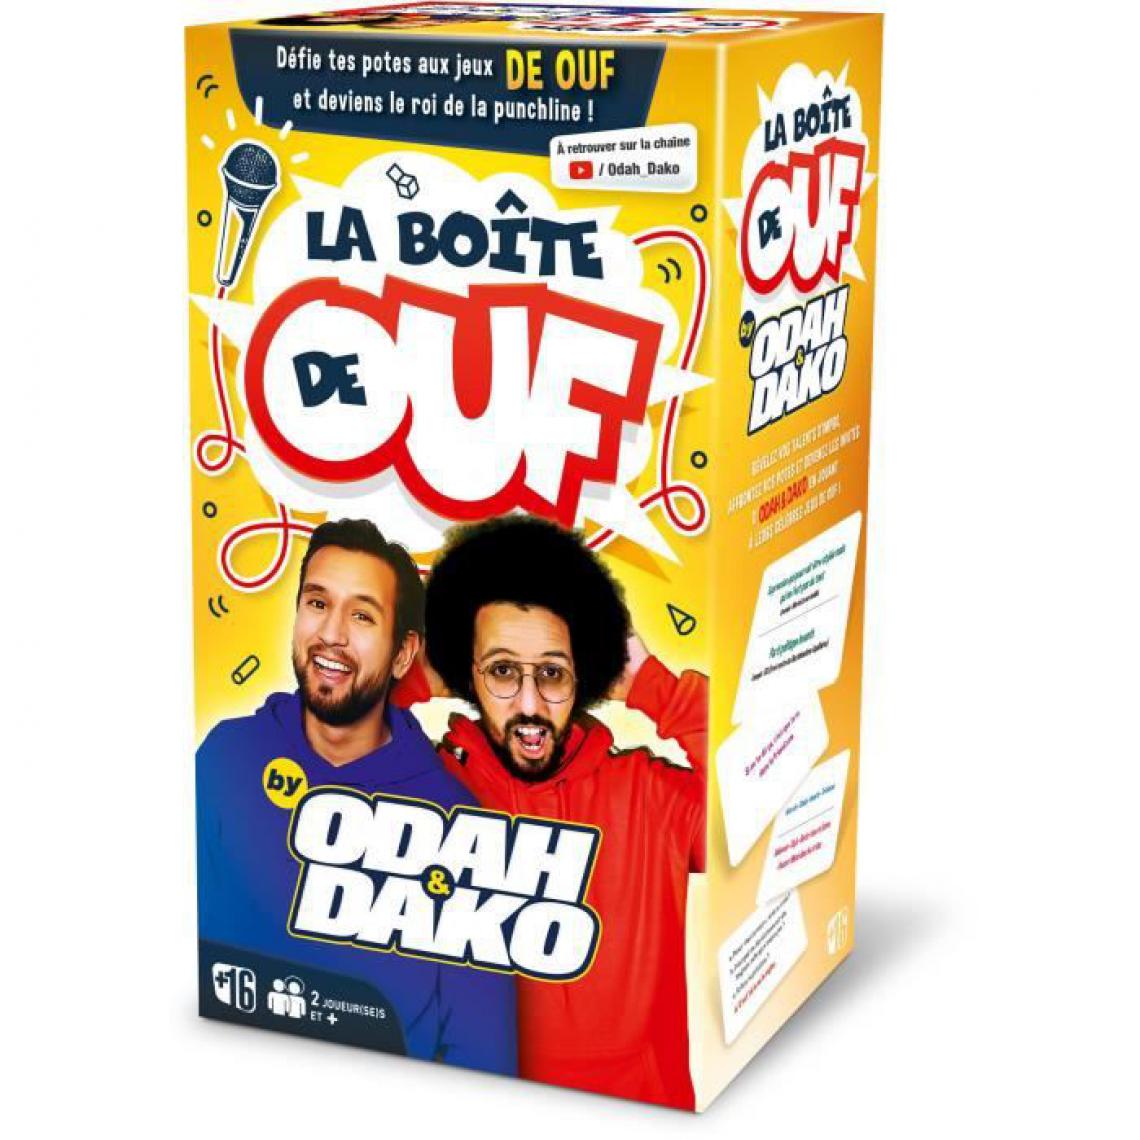 Dujardin - LA BOITE DE OUF by Odah et Dako - Jeux de cartes